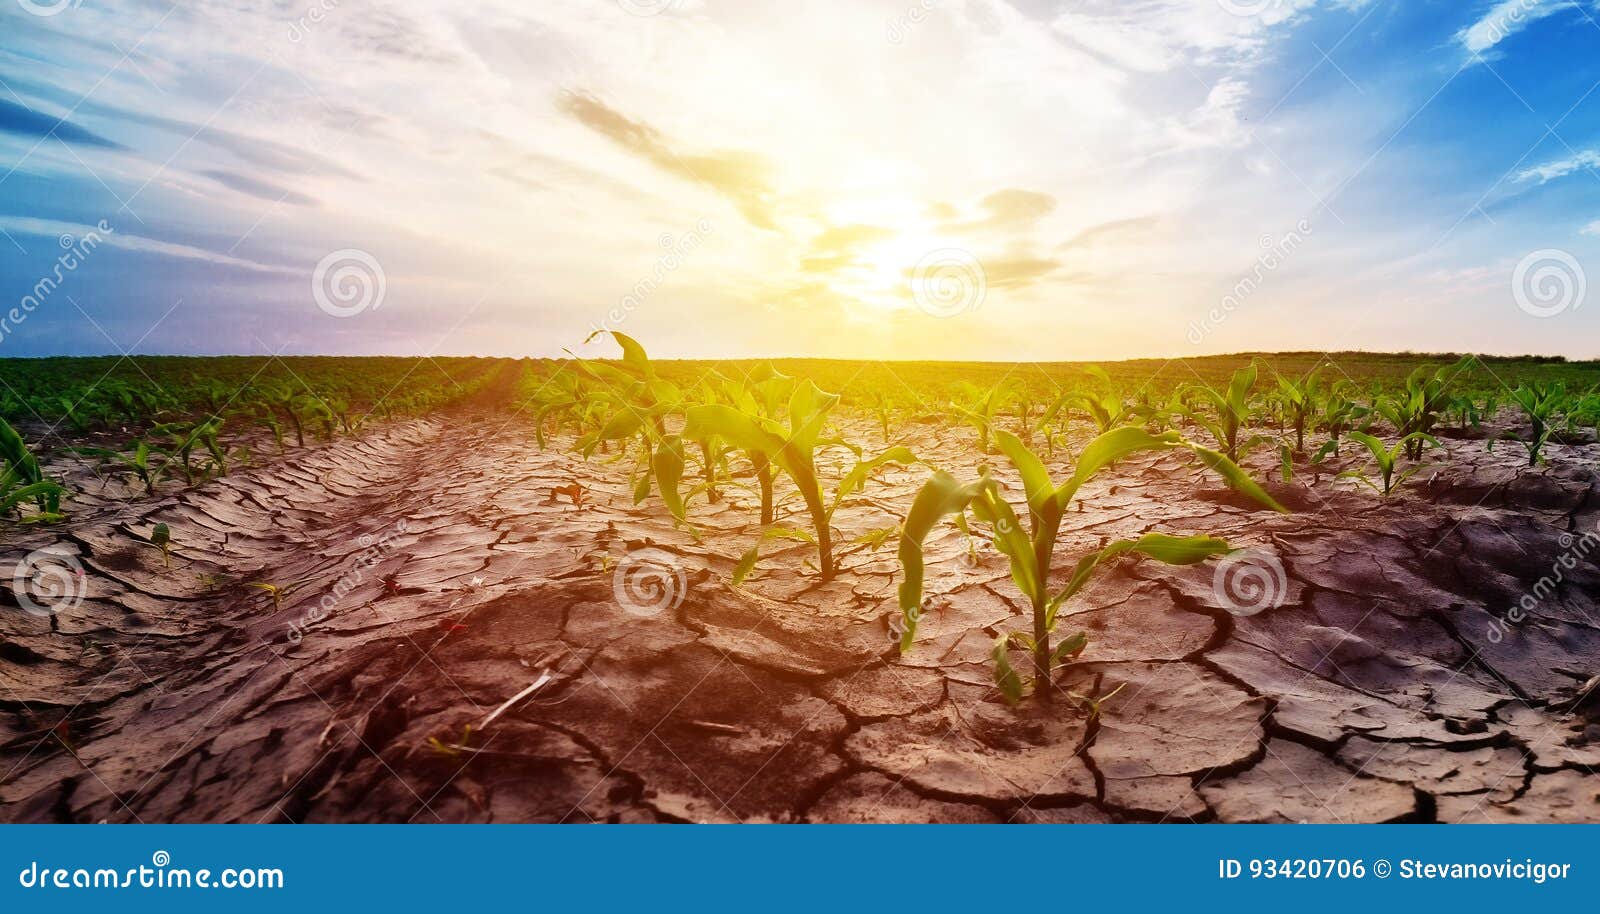 drought in corn field